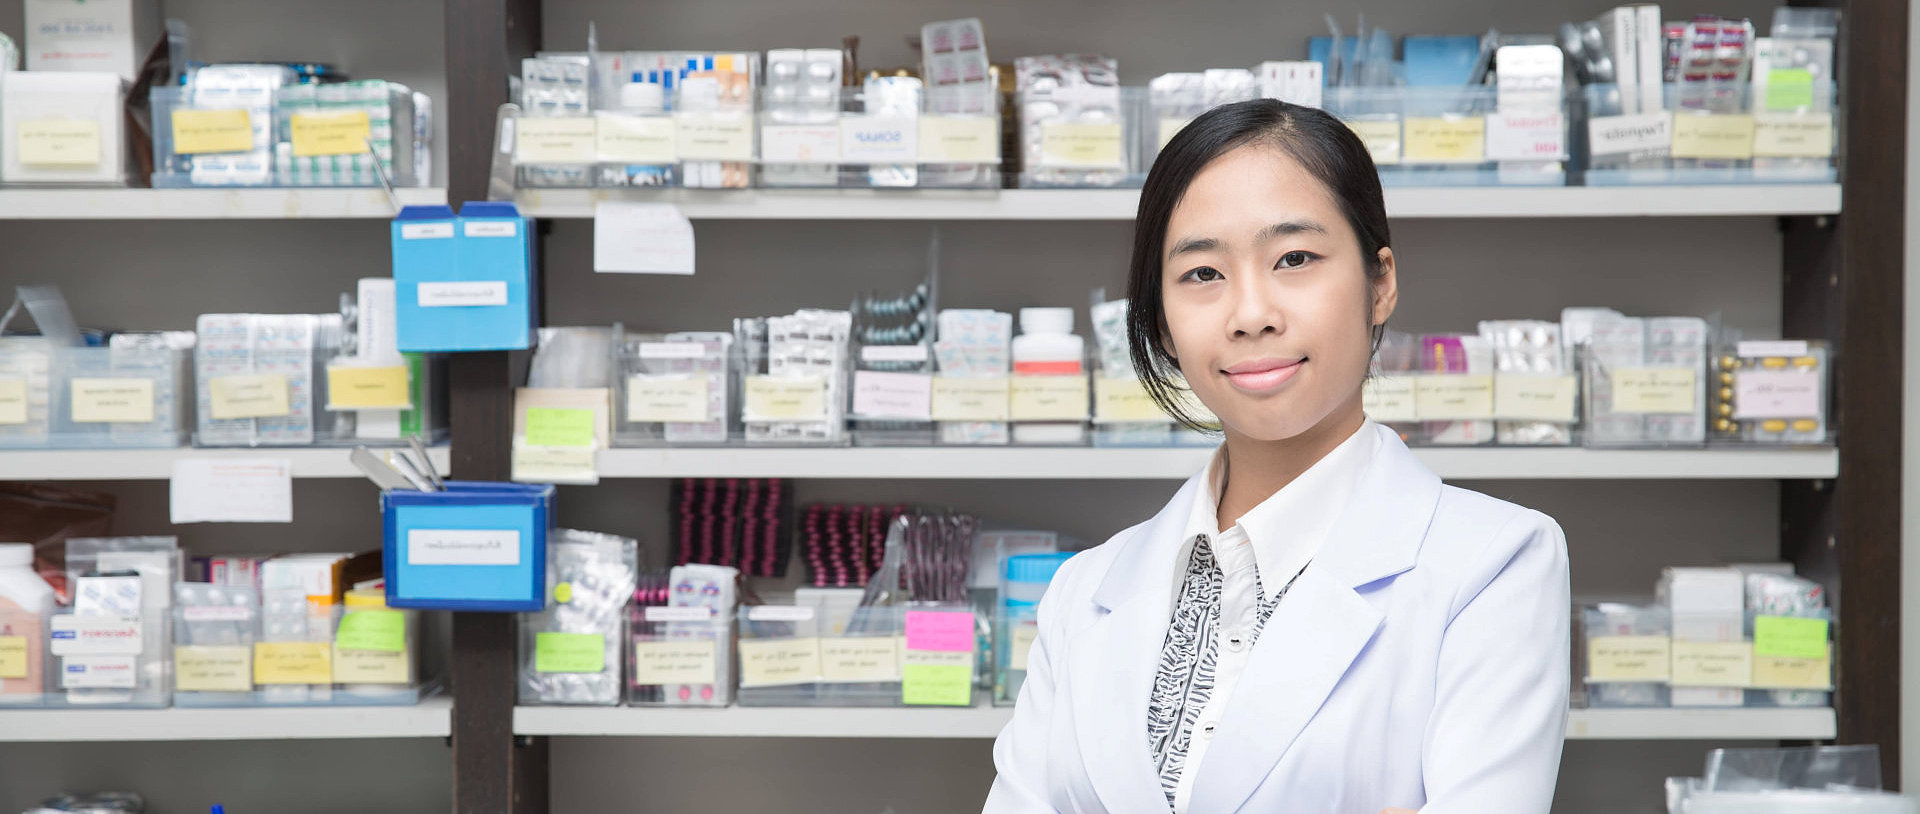 female pharmacist standing